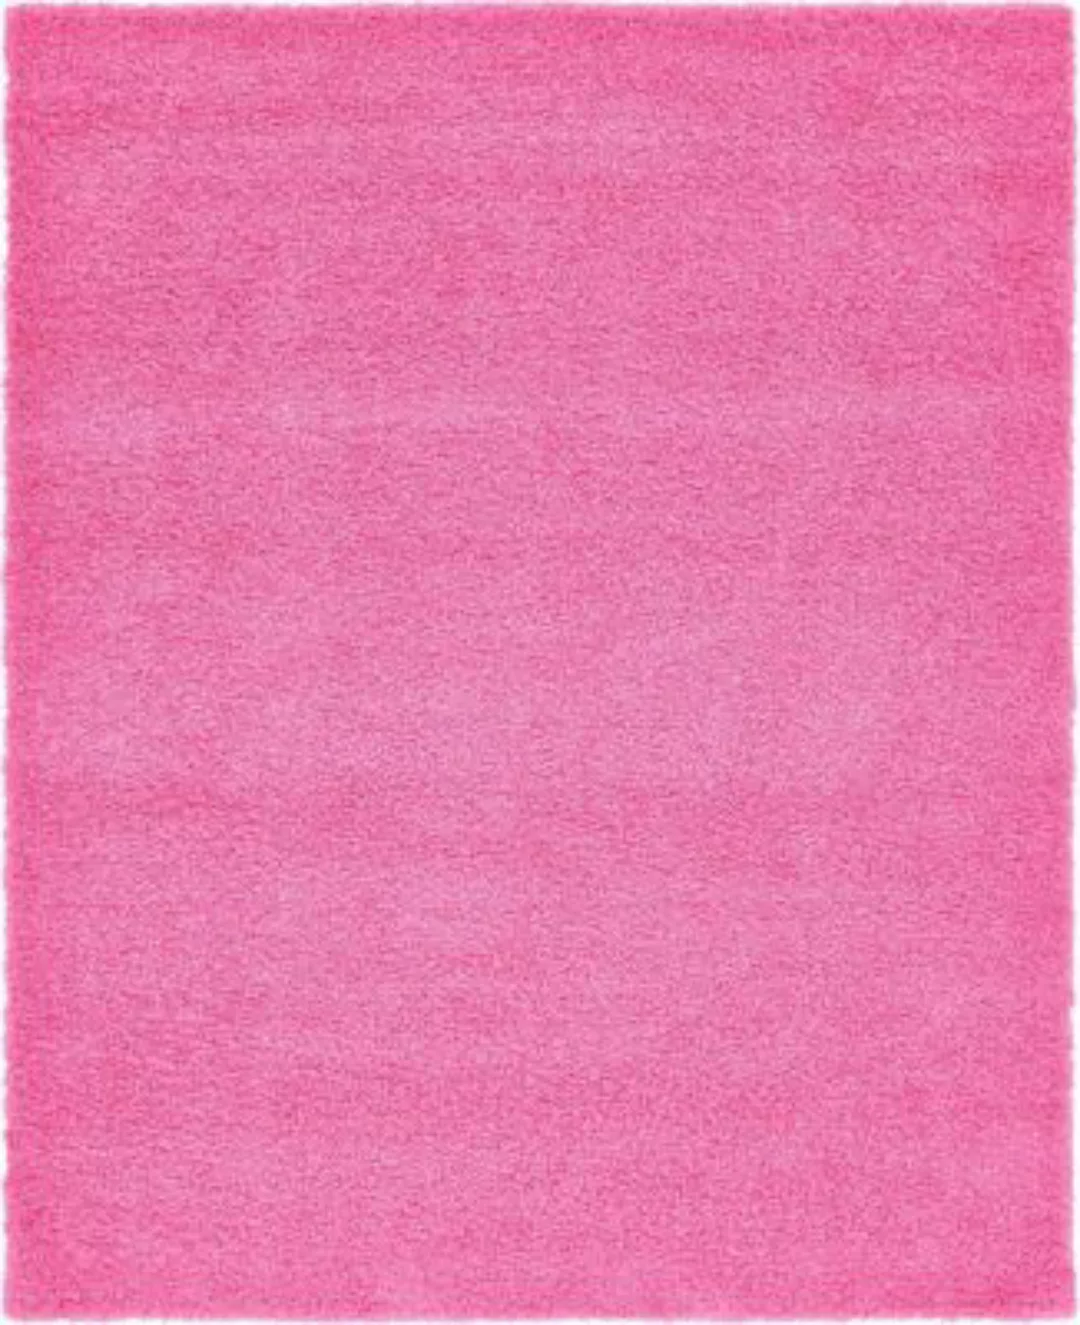 My Flair "Teppich ""Shaggy Shag""" pink Gr. 90 x 60 günstig online kaufen